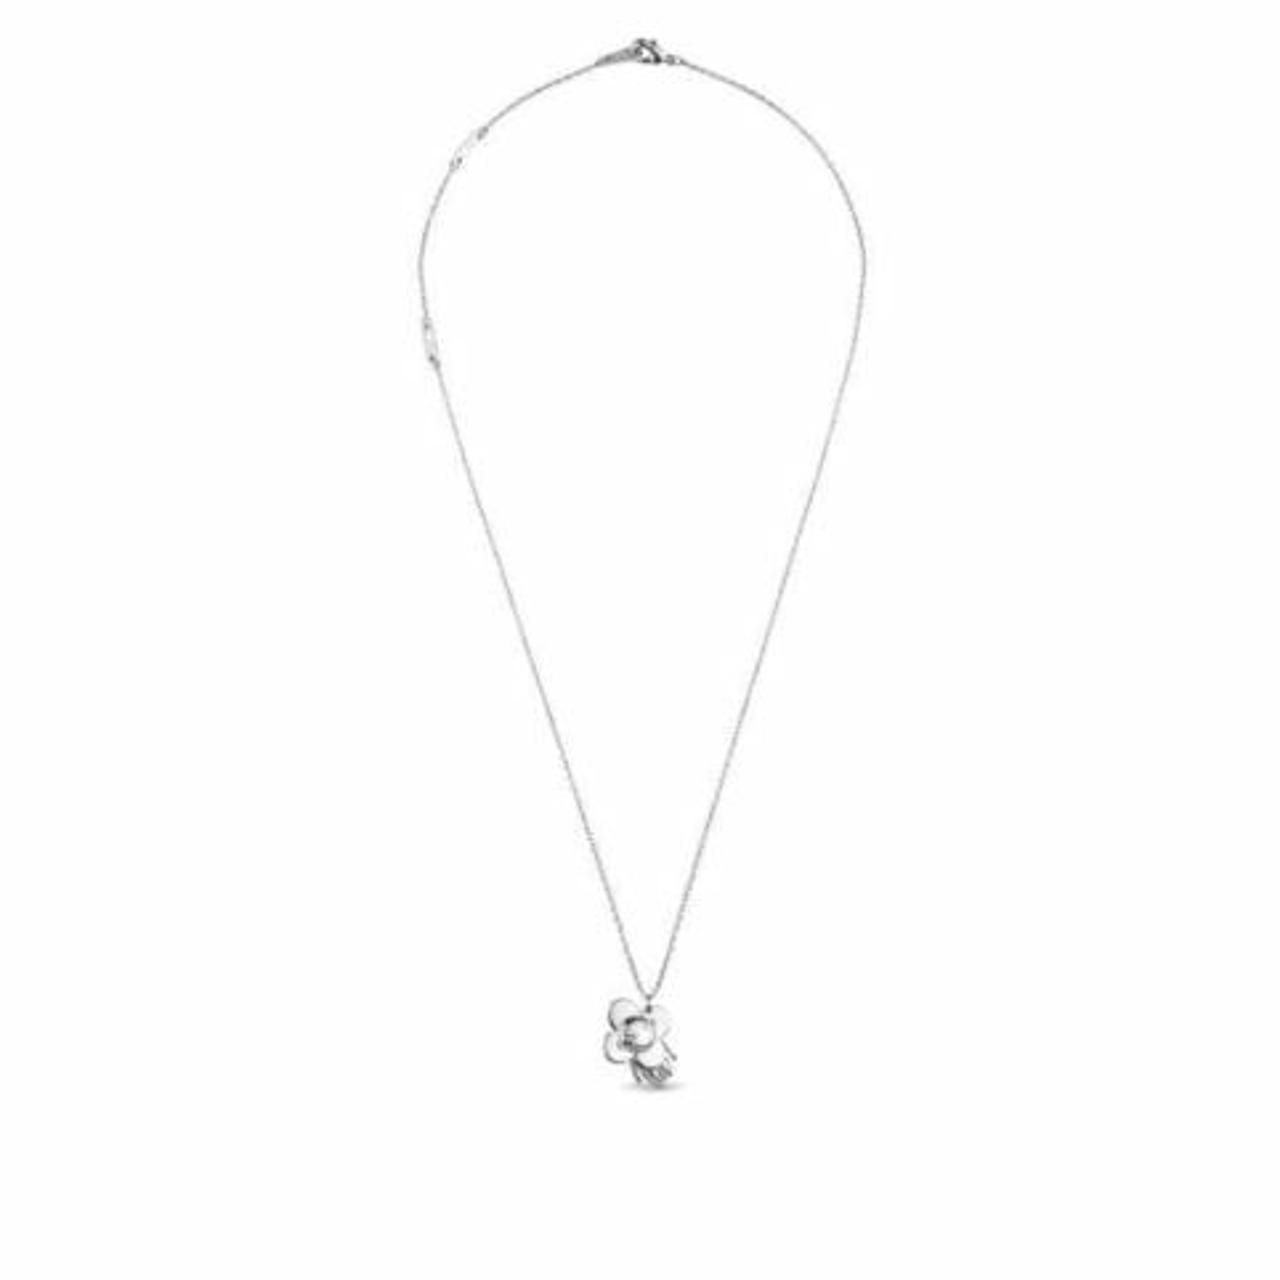 Louis Vuitton charm necklace. About 20” long. Charm - Depop